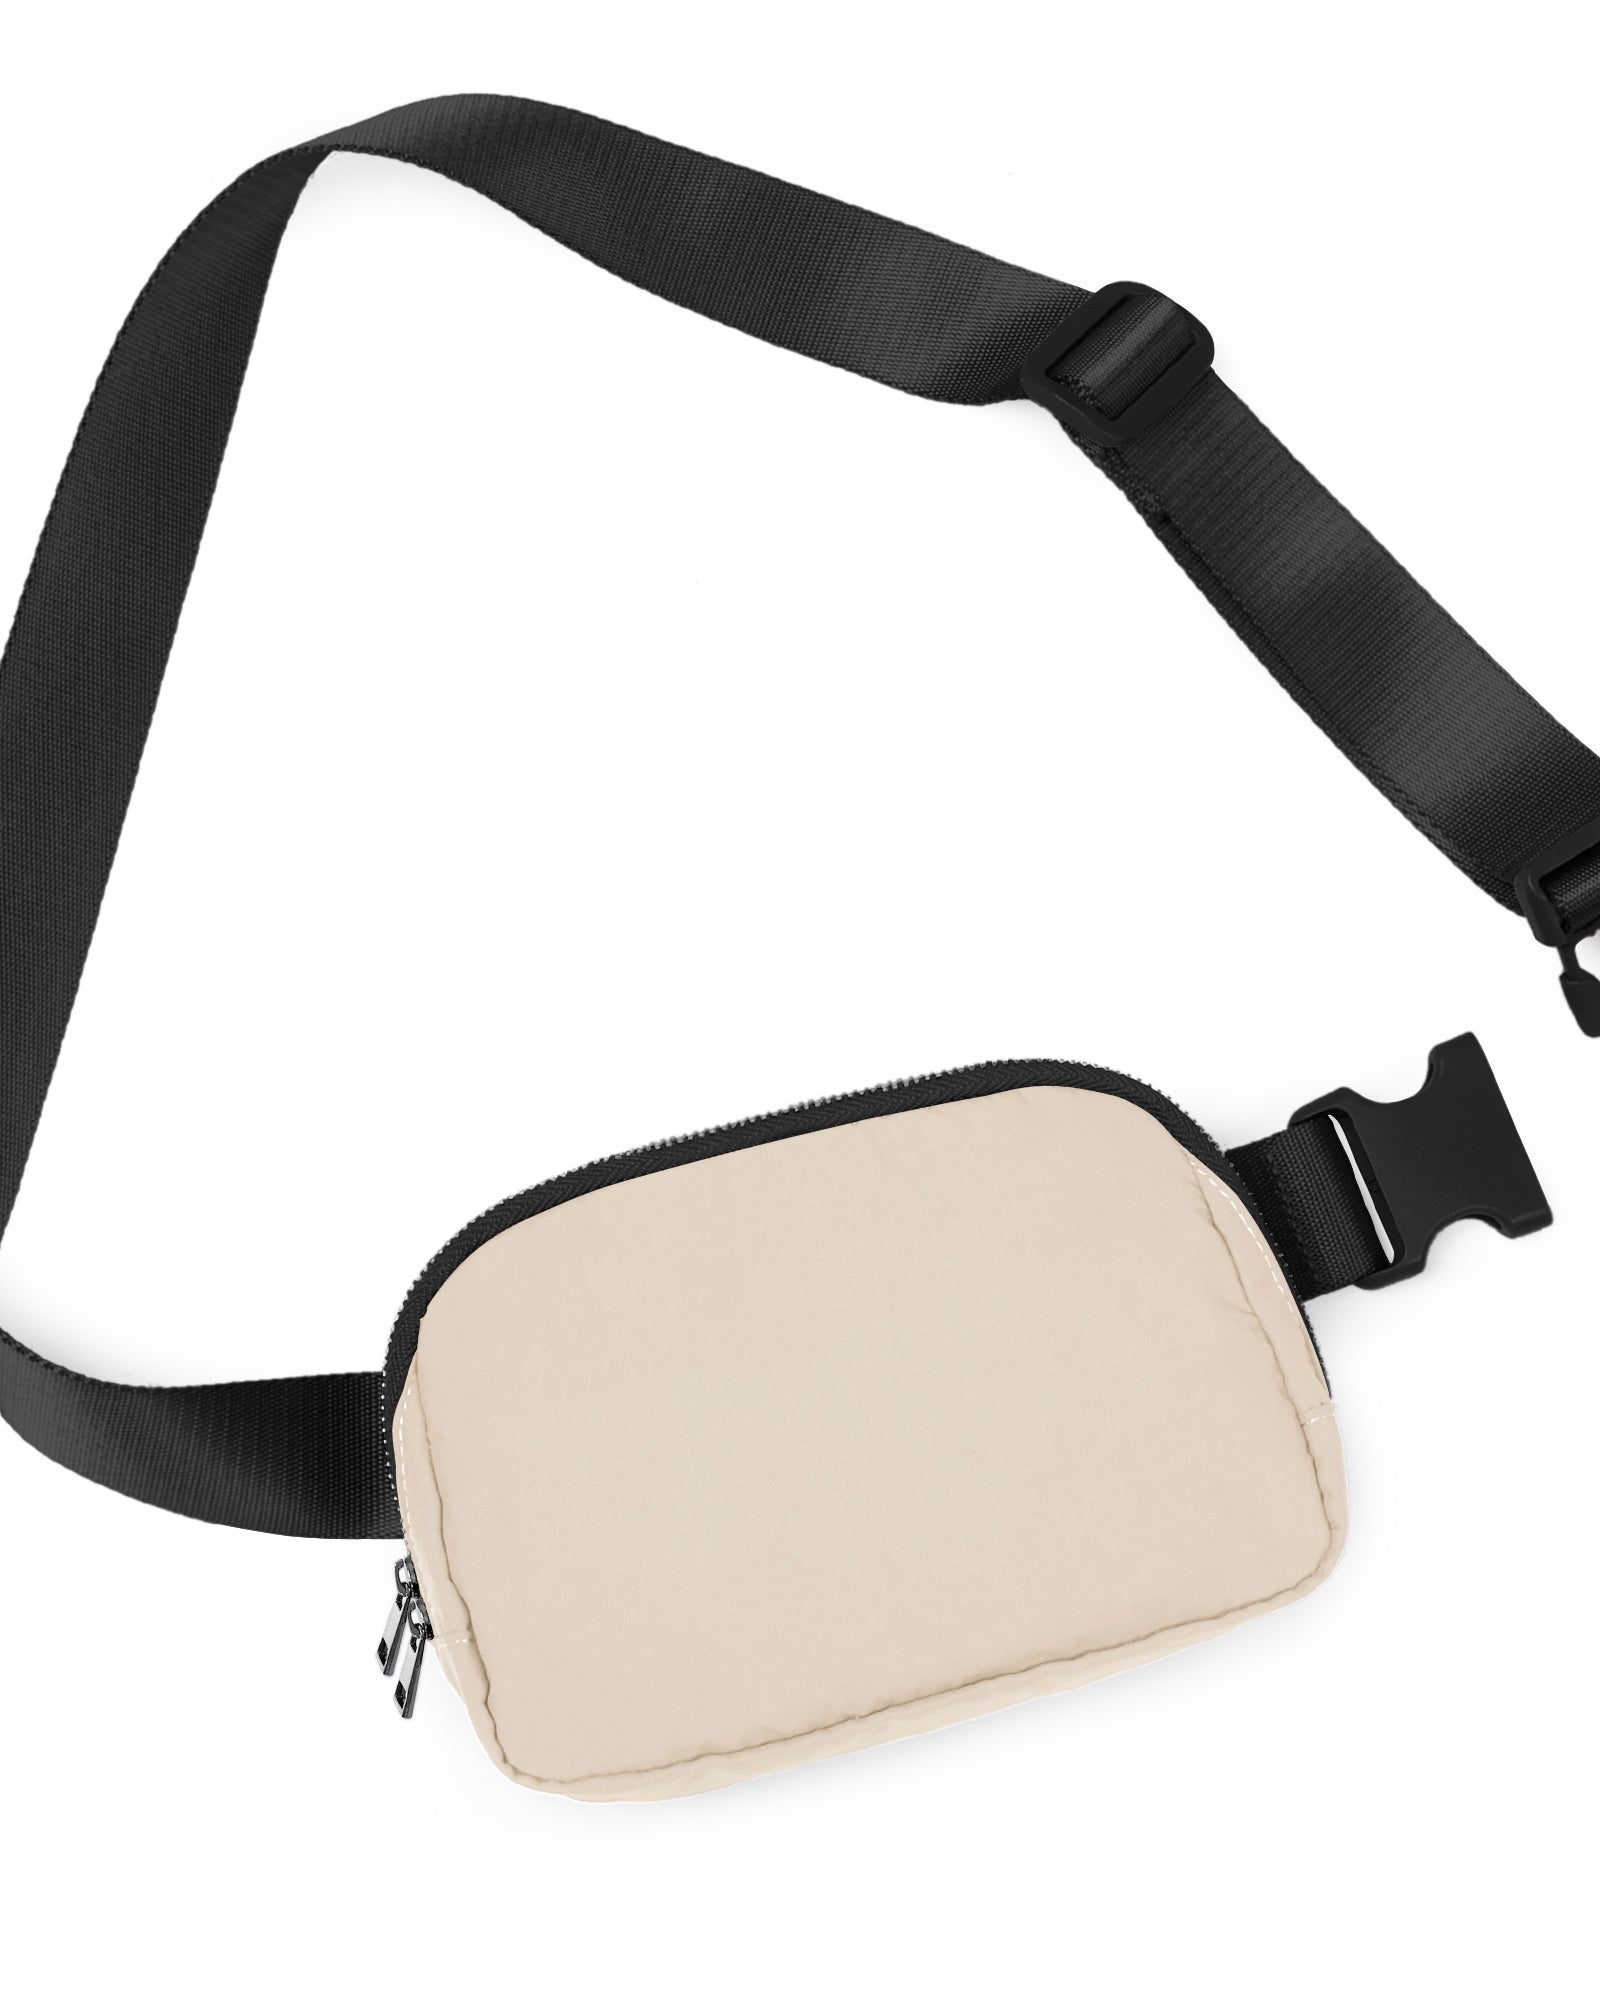 Unisex Two-Way Zip Mini Belt Bag Ivory Black 8" x 2" x 5.5" - ododos